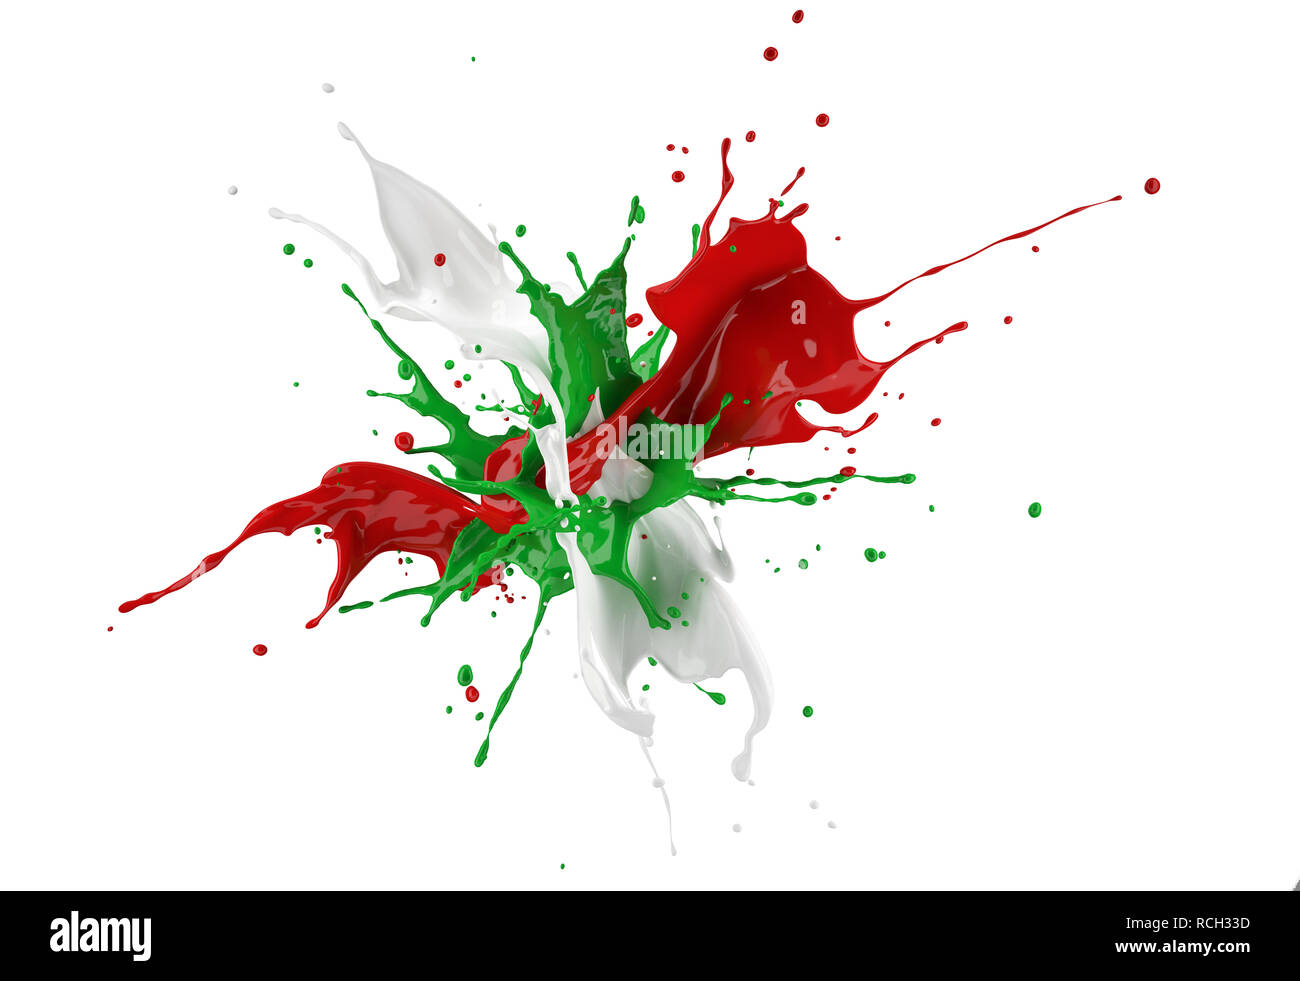 Rouge, blanc et vert peinture splash explosion isolé sur fond blanc. Chemin de détourage inclus. Banque D'Images